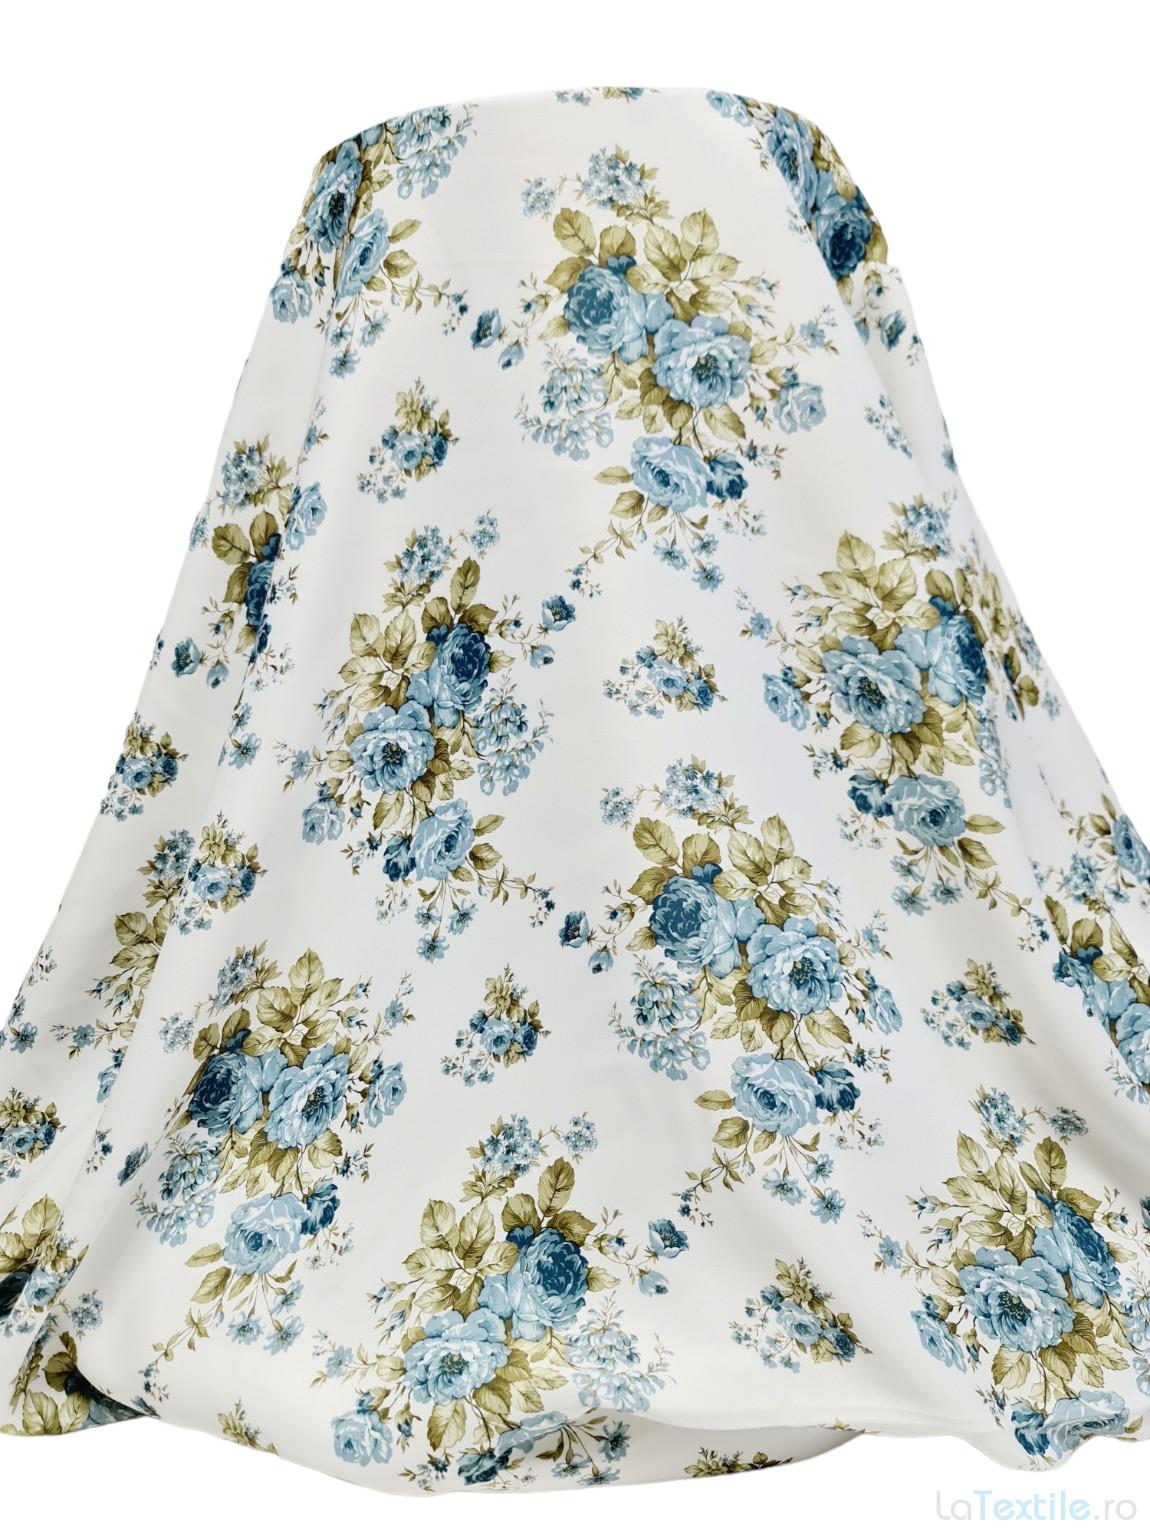 Material draperie satinat alb cu imprimeu floral bleu